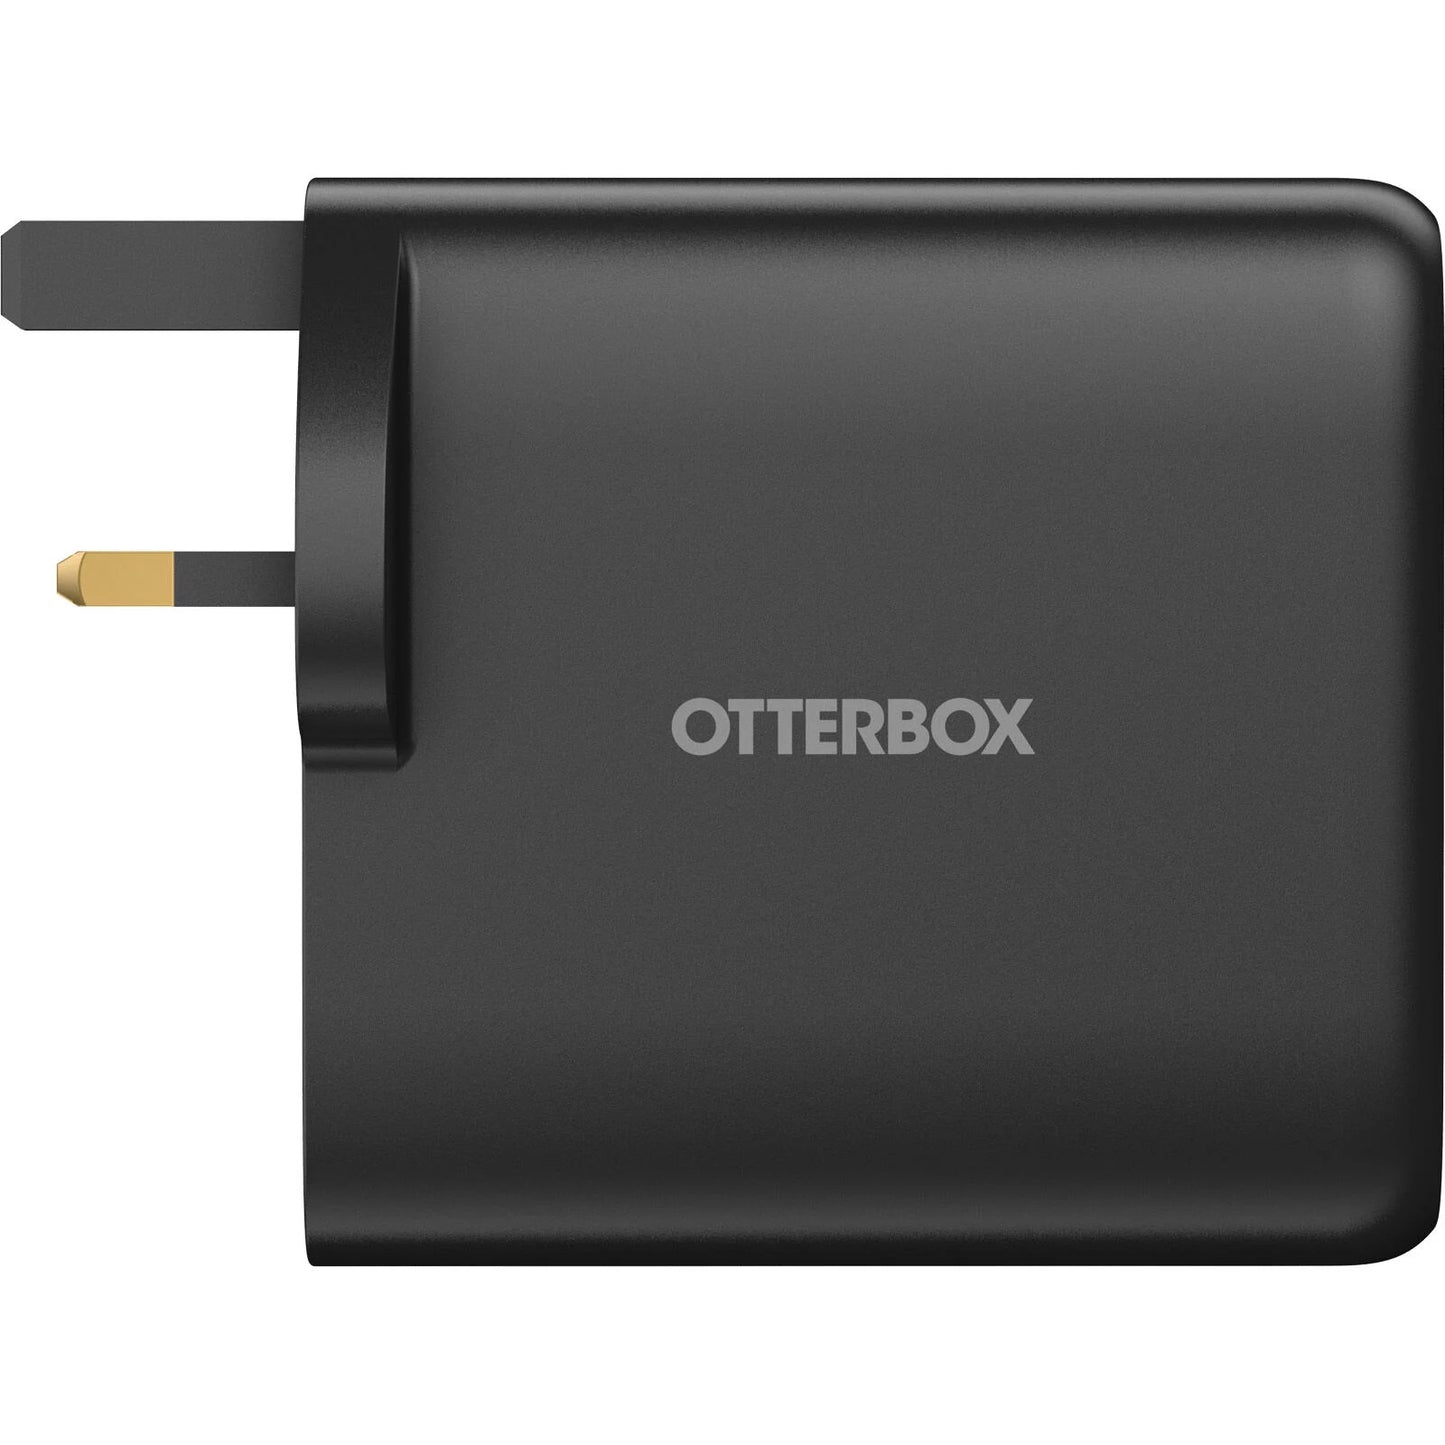 OtterBox 100W GaN 2x USB-C / 2x USB-A USB-PD UK Wall Charger - Black - maplin.co.uk